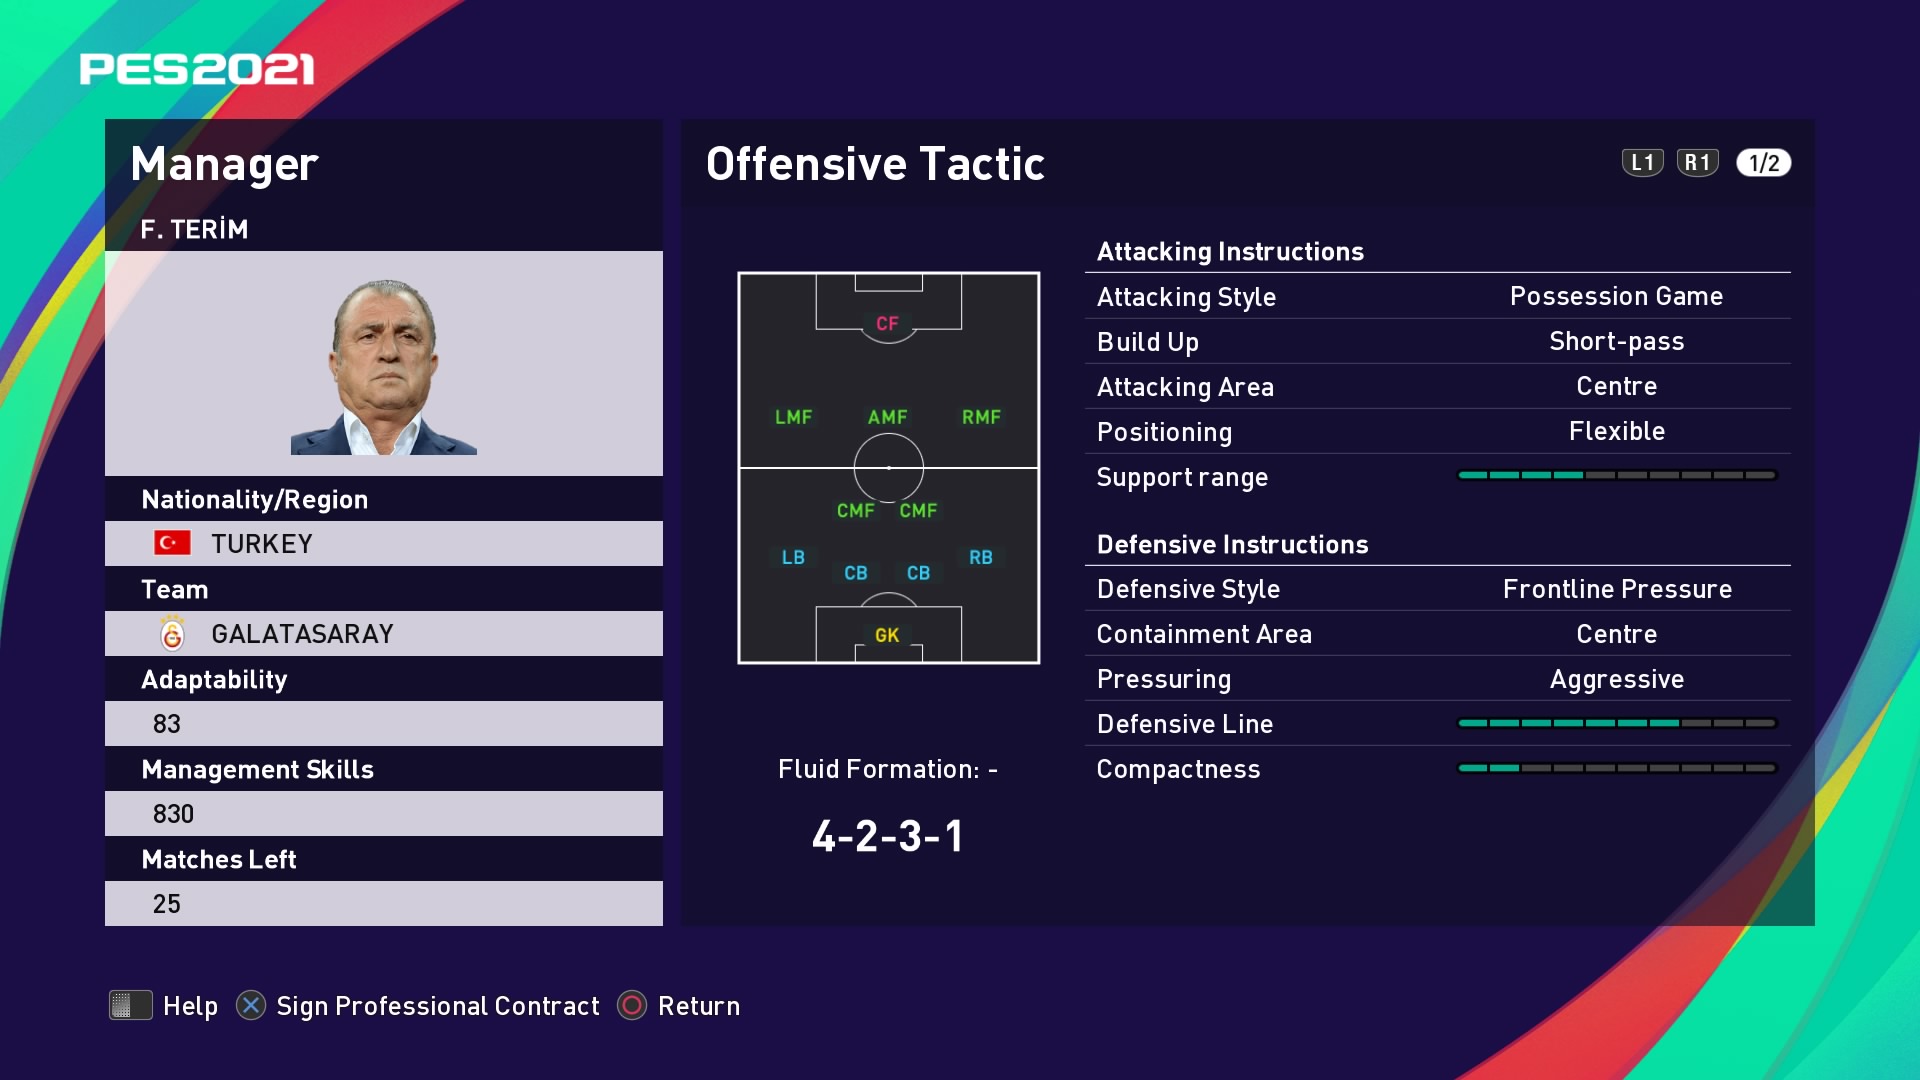 F. Terim (Fatih Terim) Offensive Tactic in PES 2021 myClub